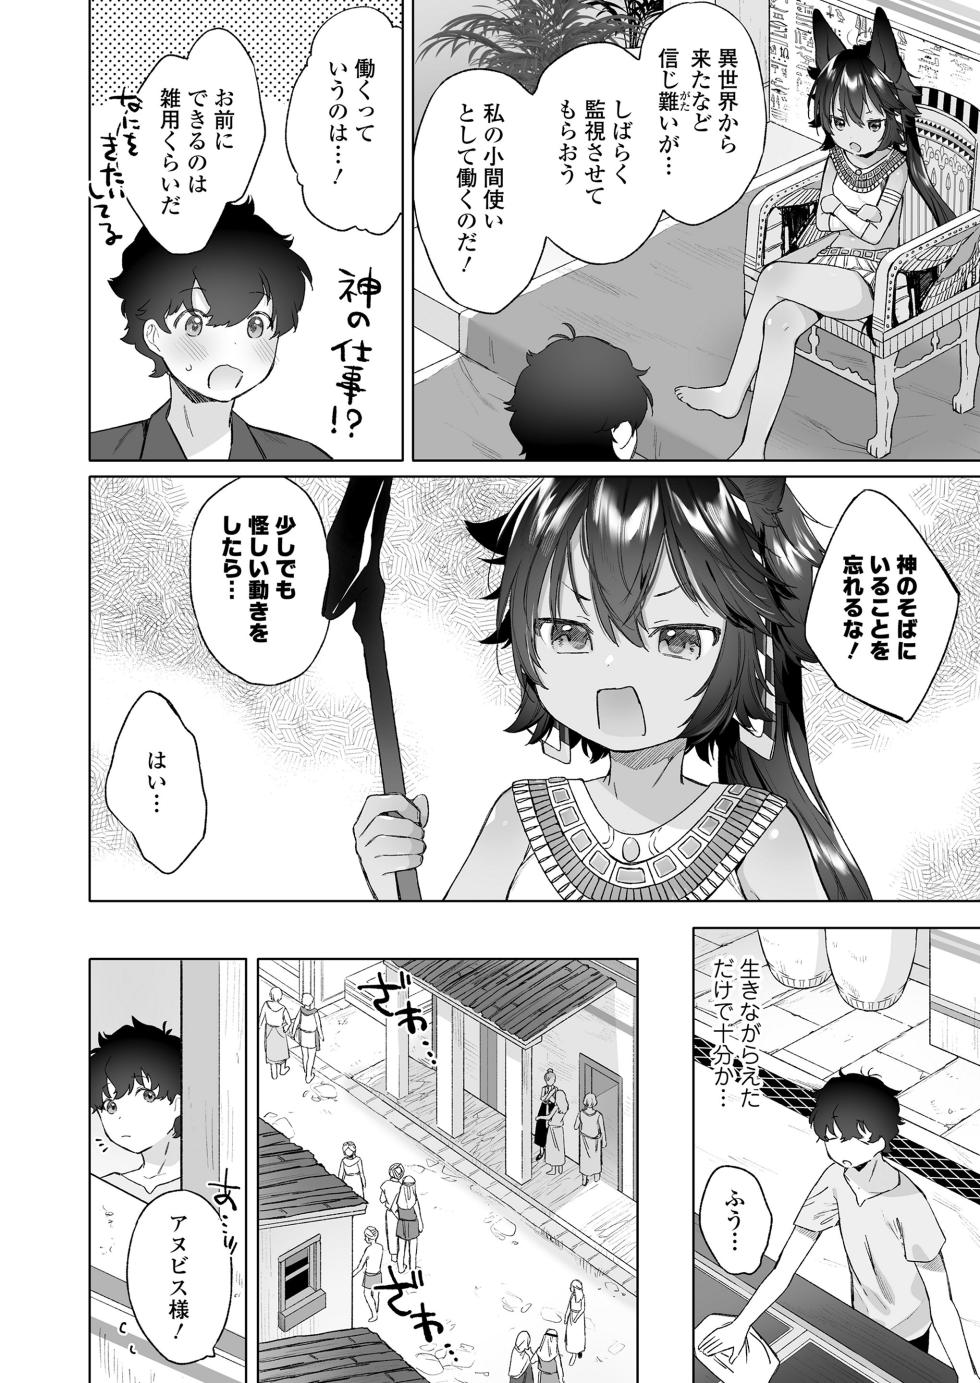 Towako 15 [Digital] - Page 6